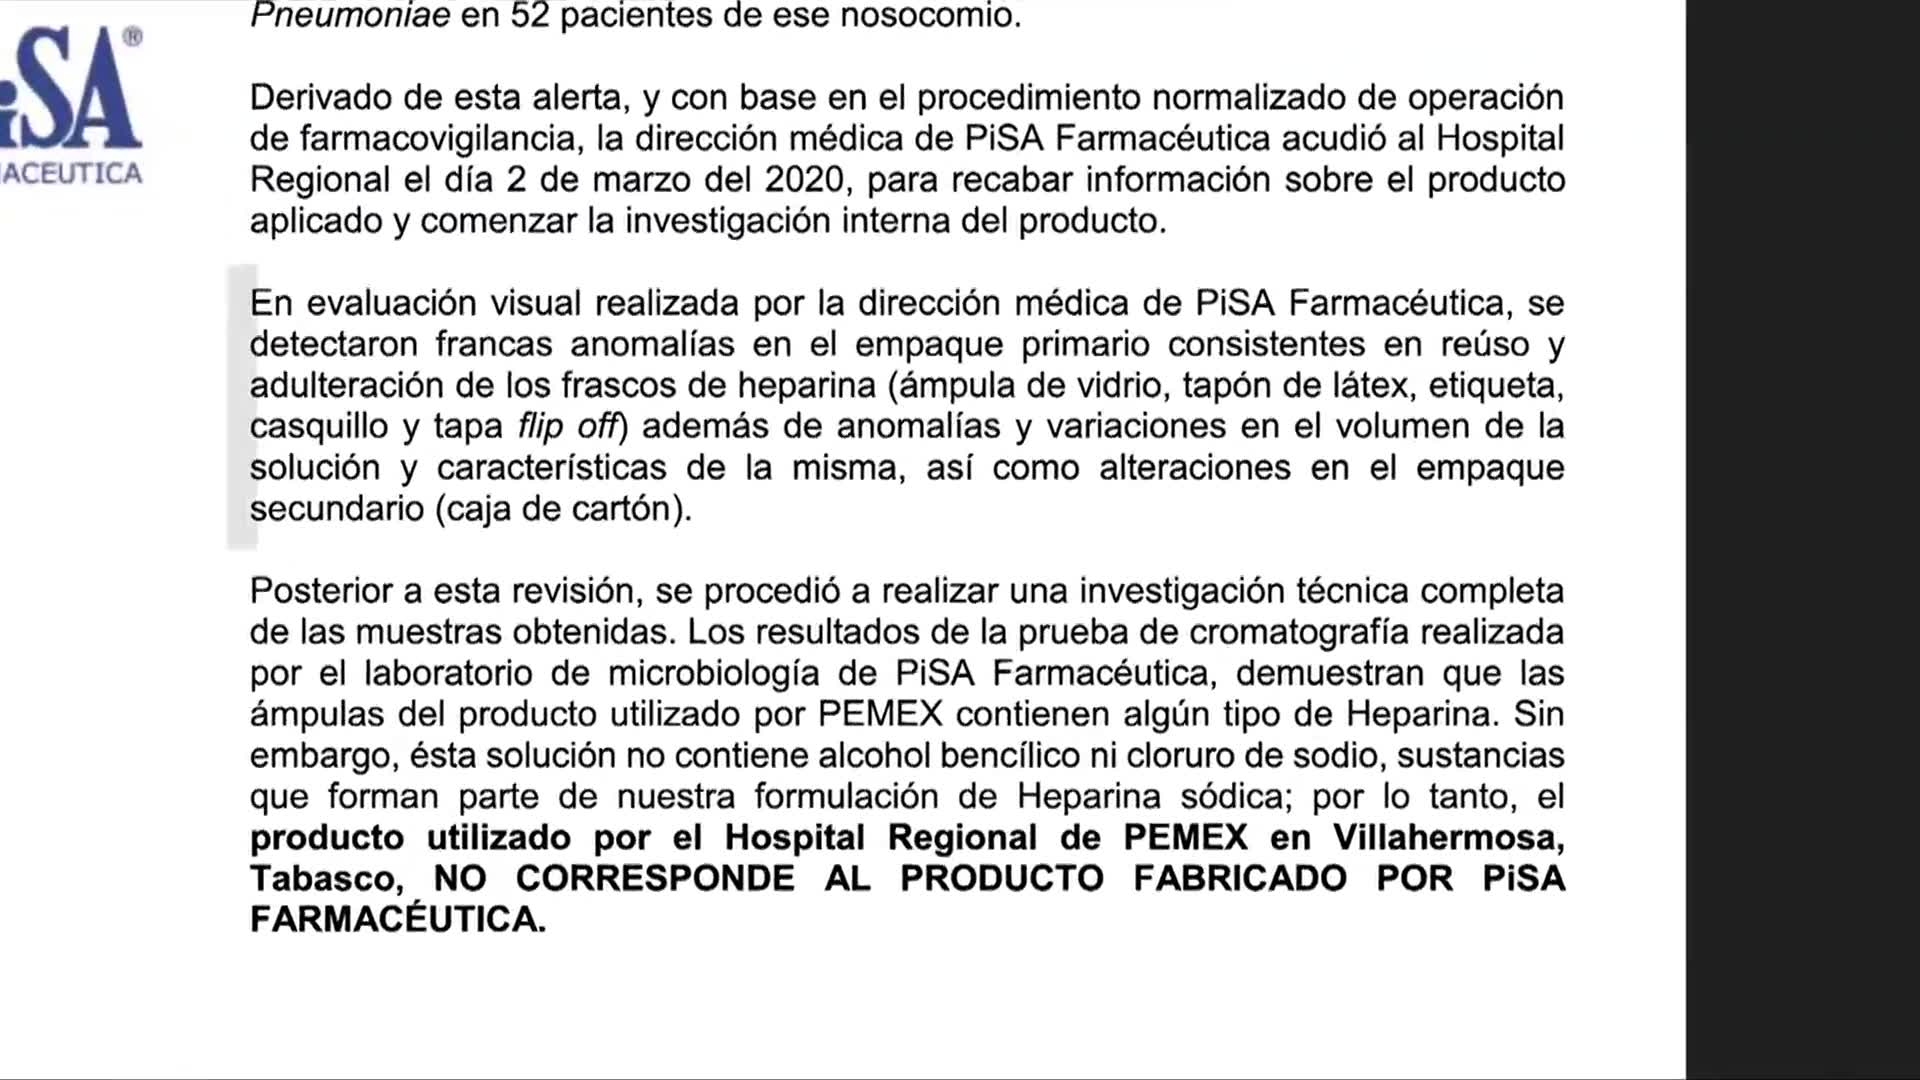 Foto: pemex compro medicamento contaminado a presunto ingeniero industrial y no a farmaceutica